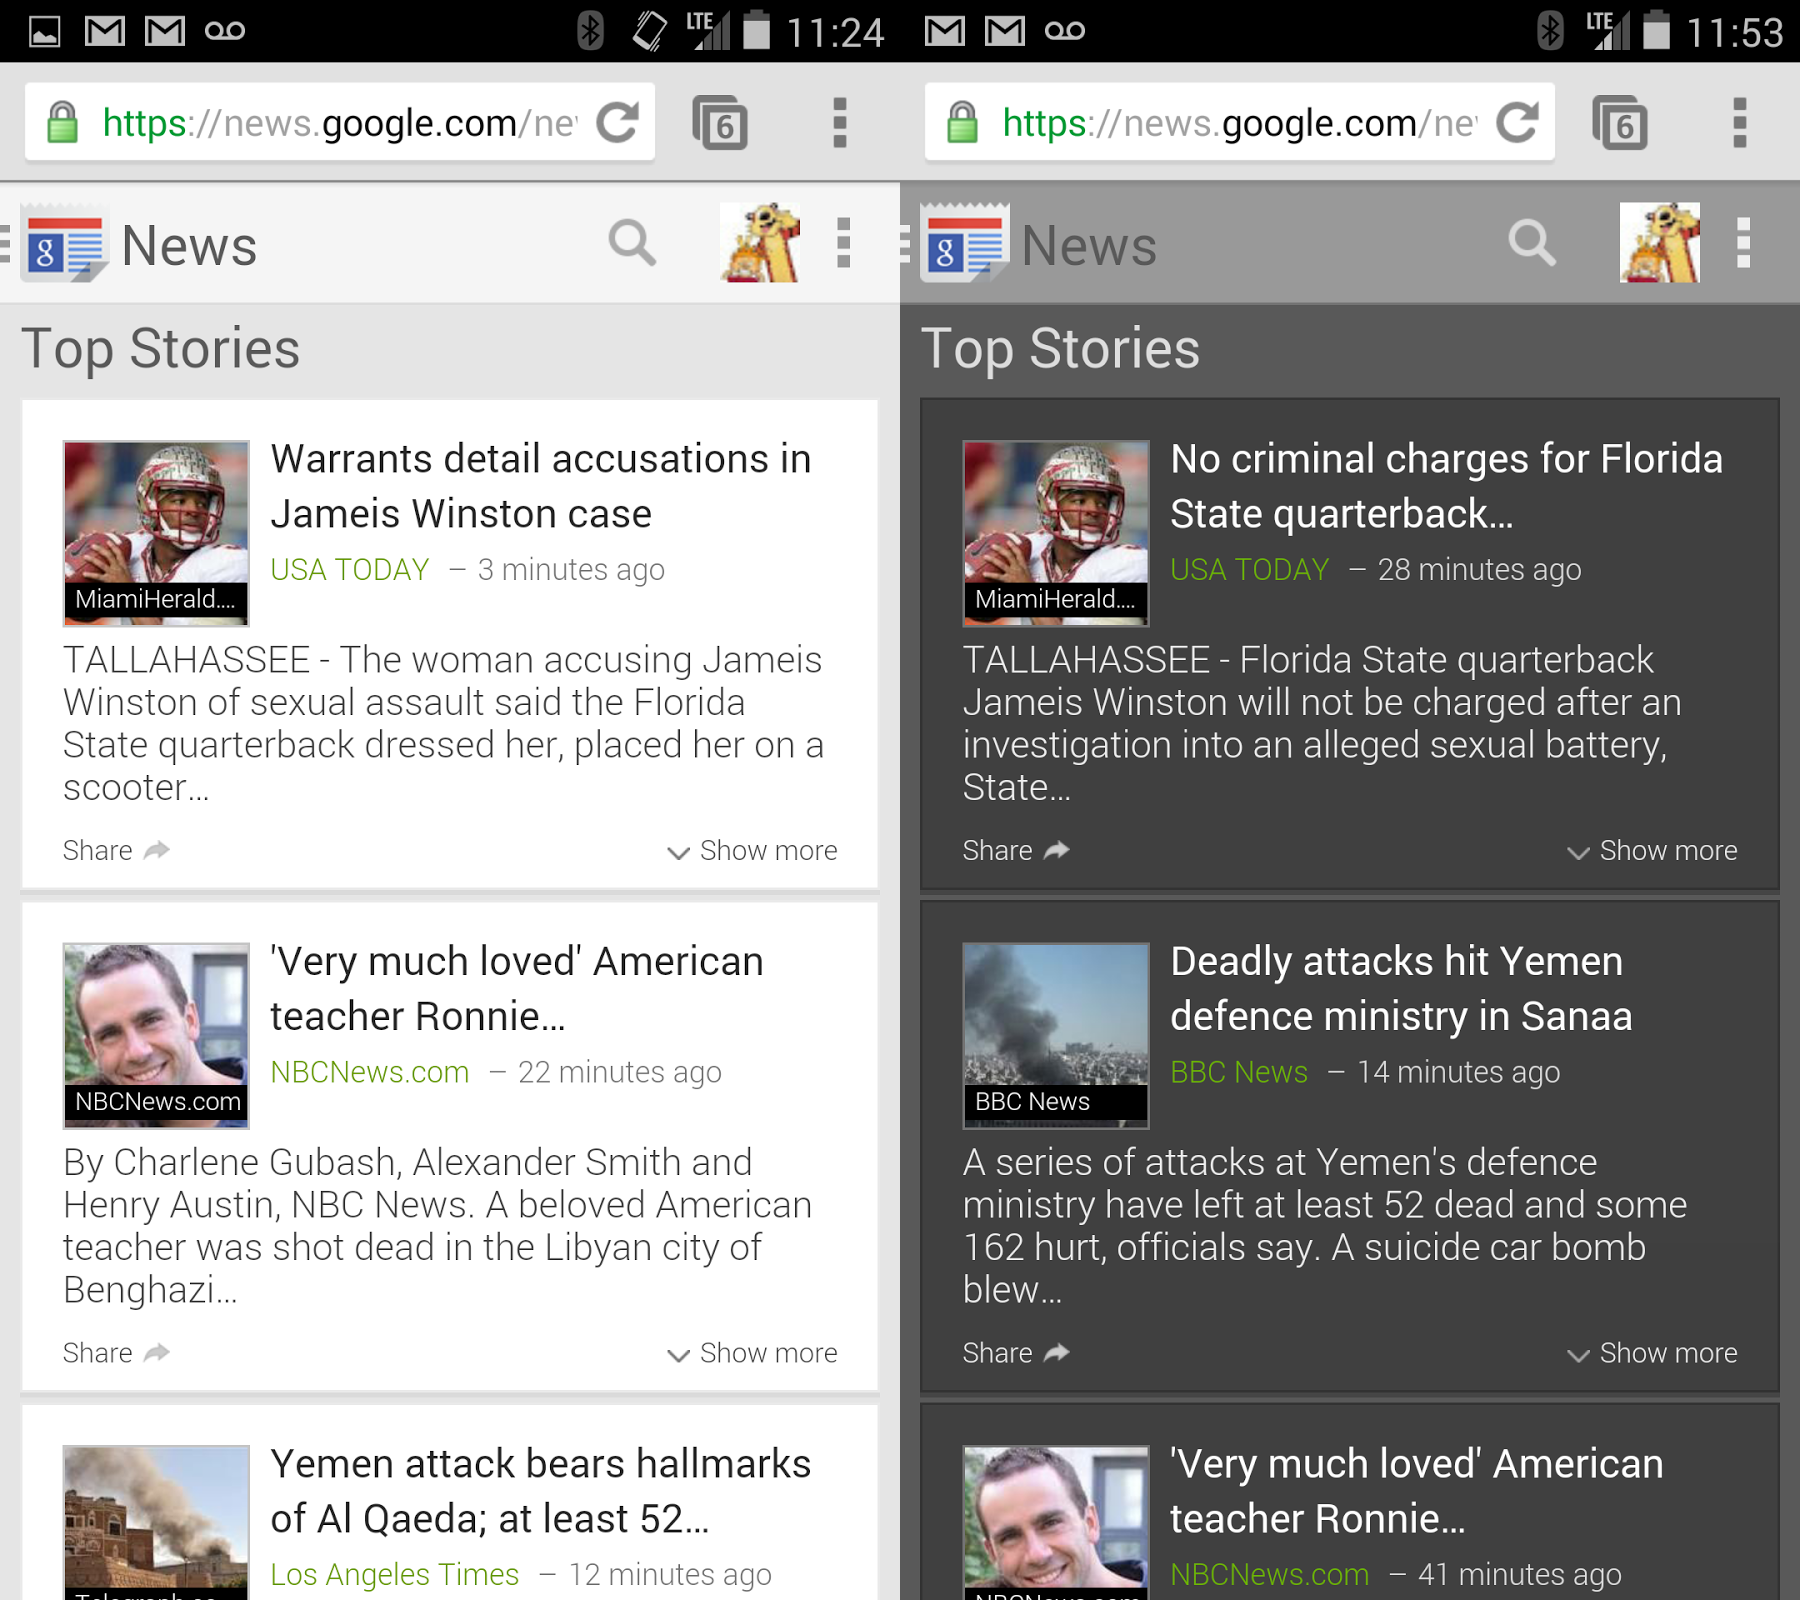 Google News mobile website gets major redesign